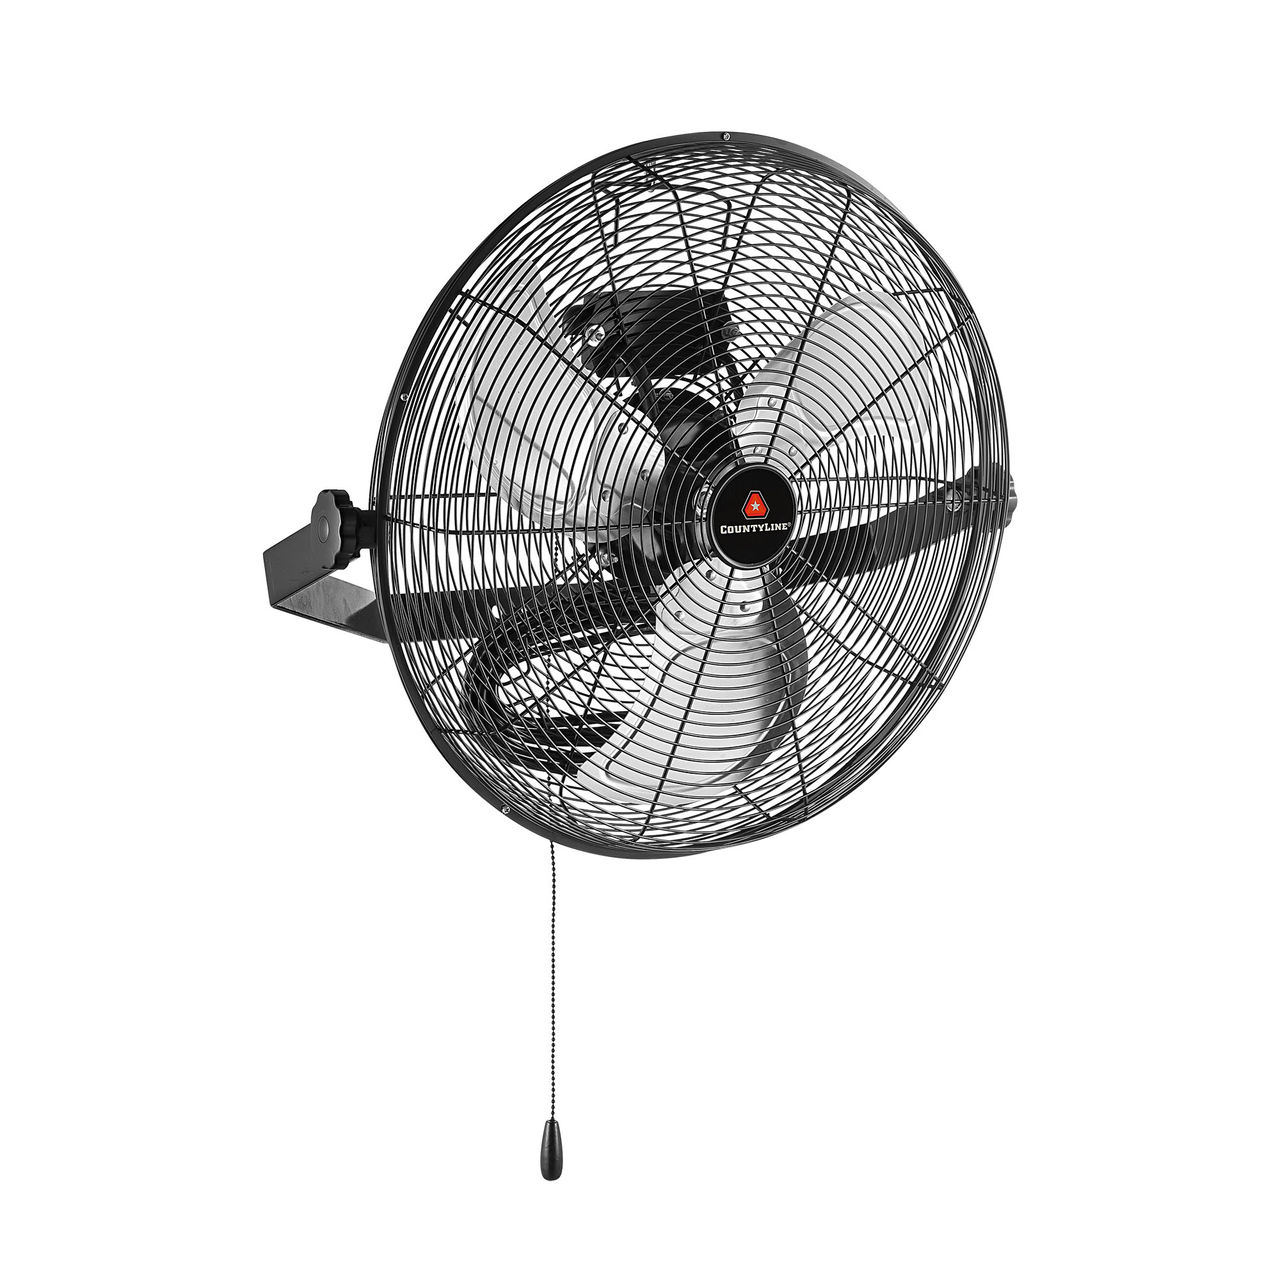 Image of CountyLine wall mounted fan.